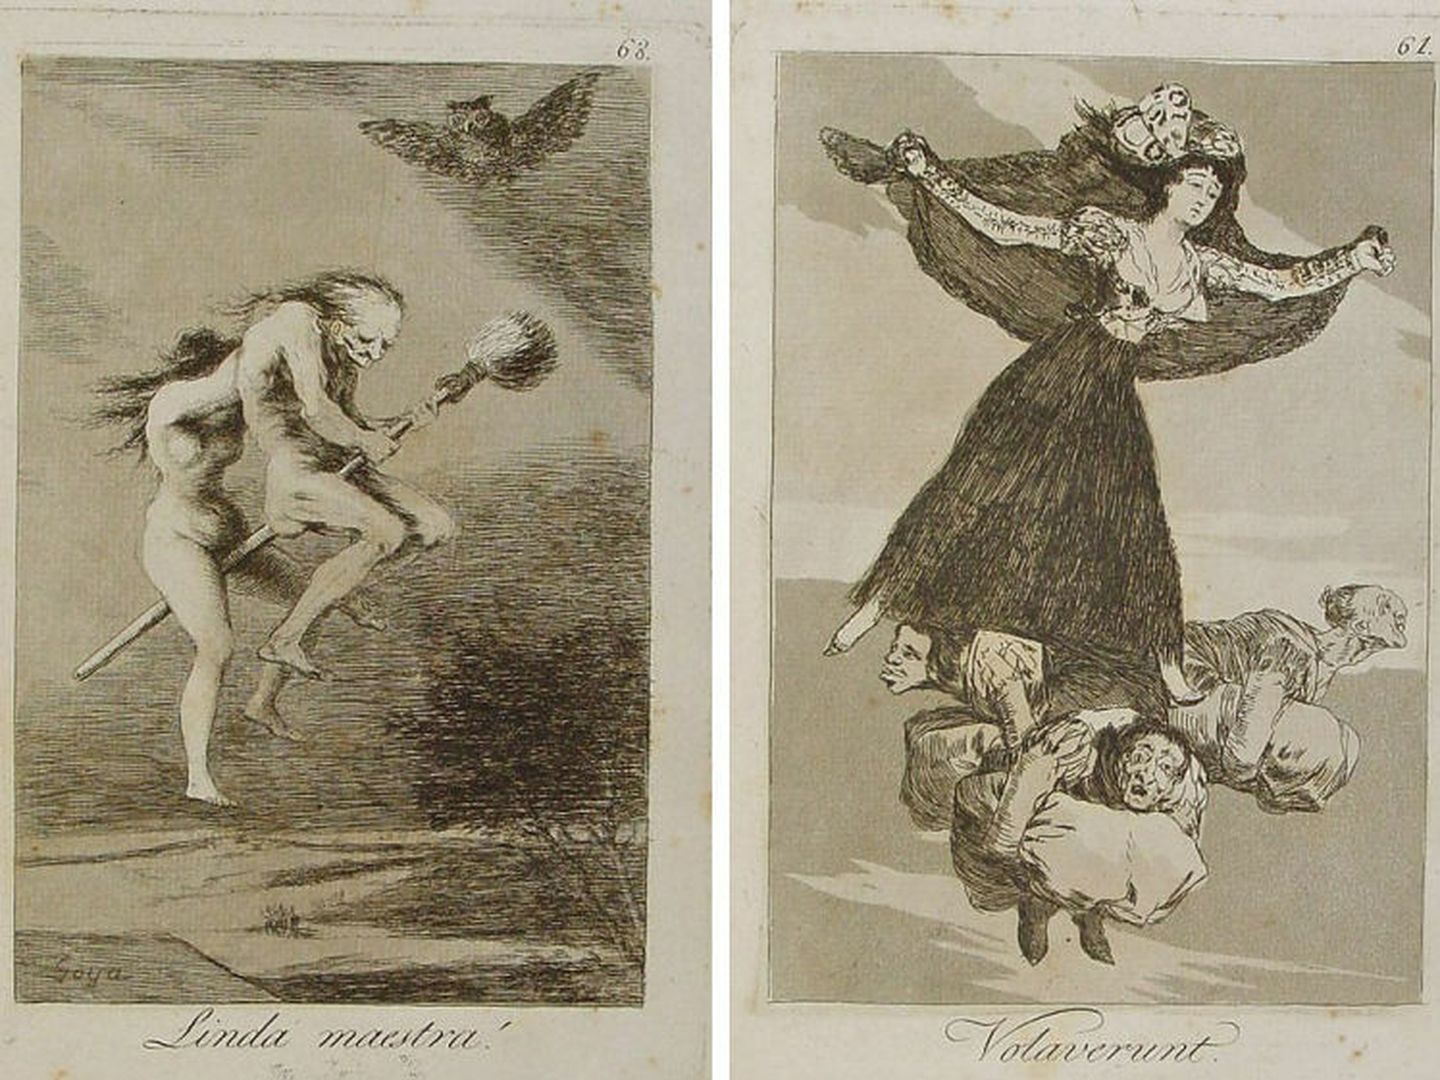 'La linda maestra' y 'Volavérunt'. Francisco de Goya, 1799.